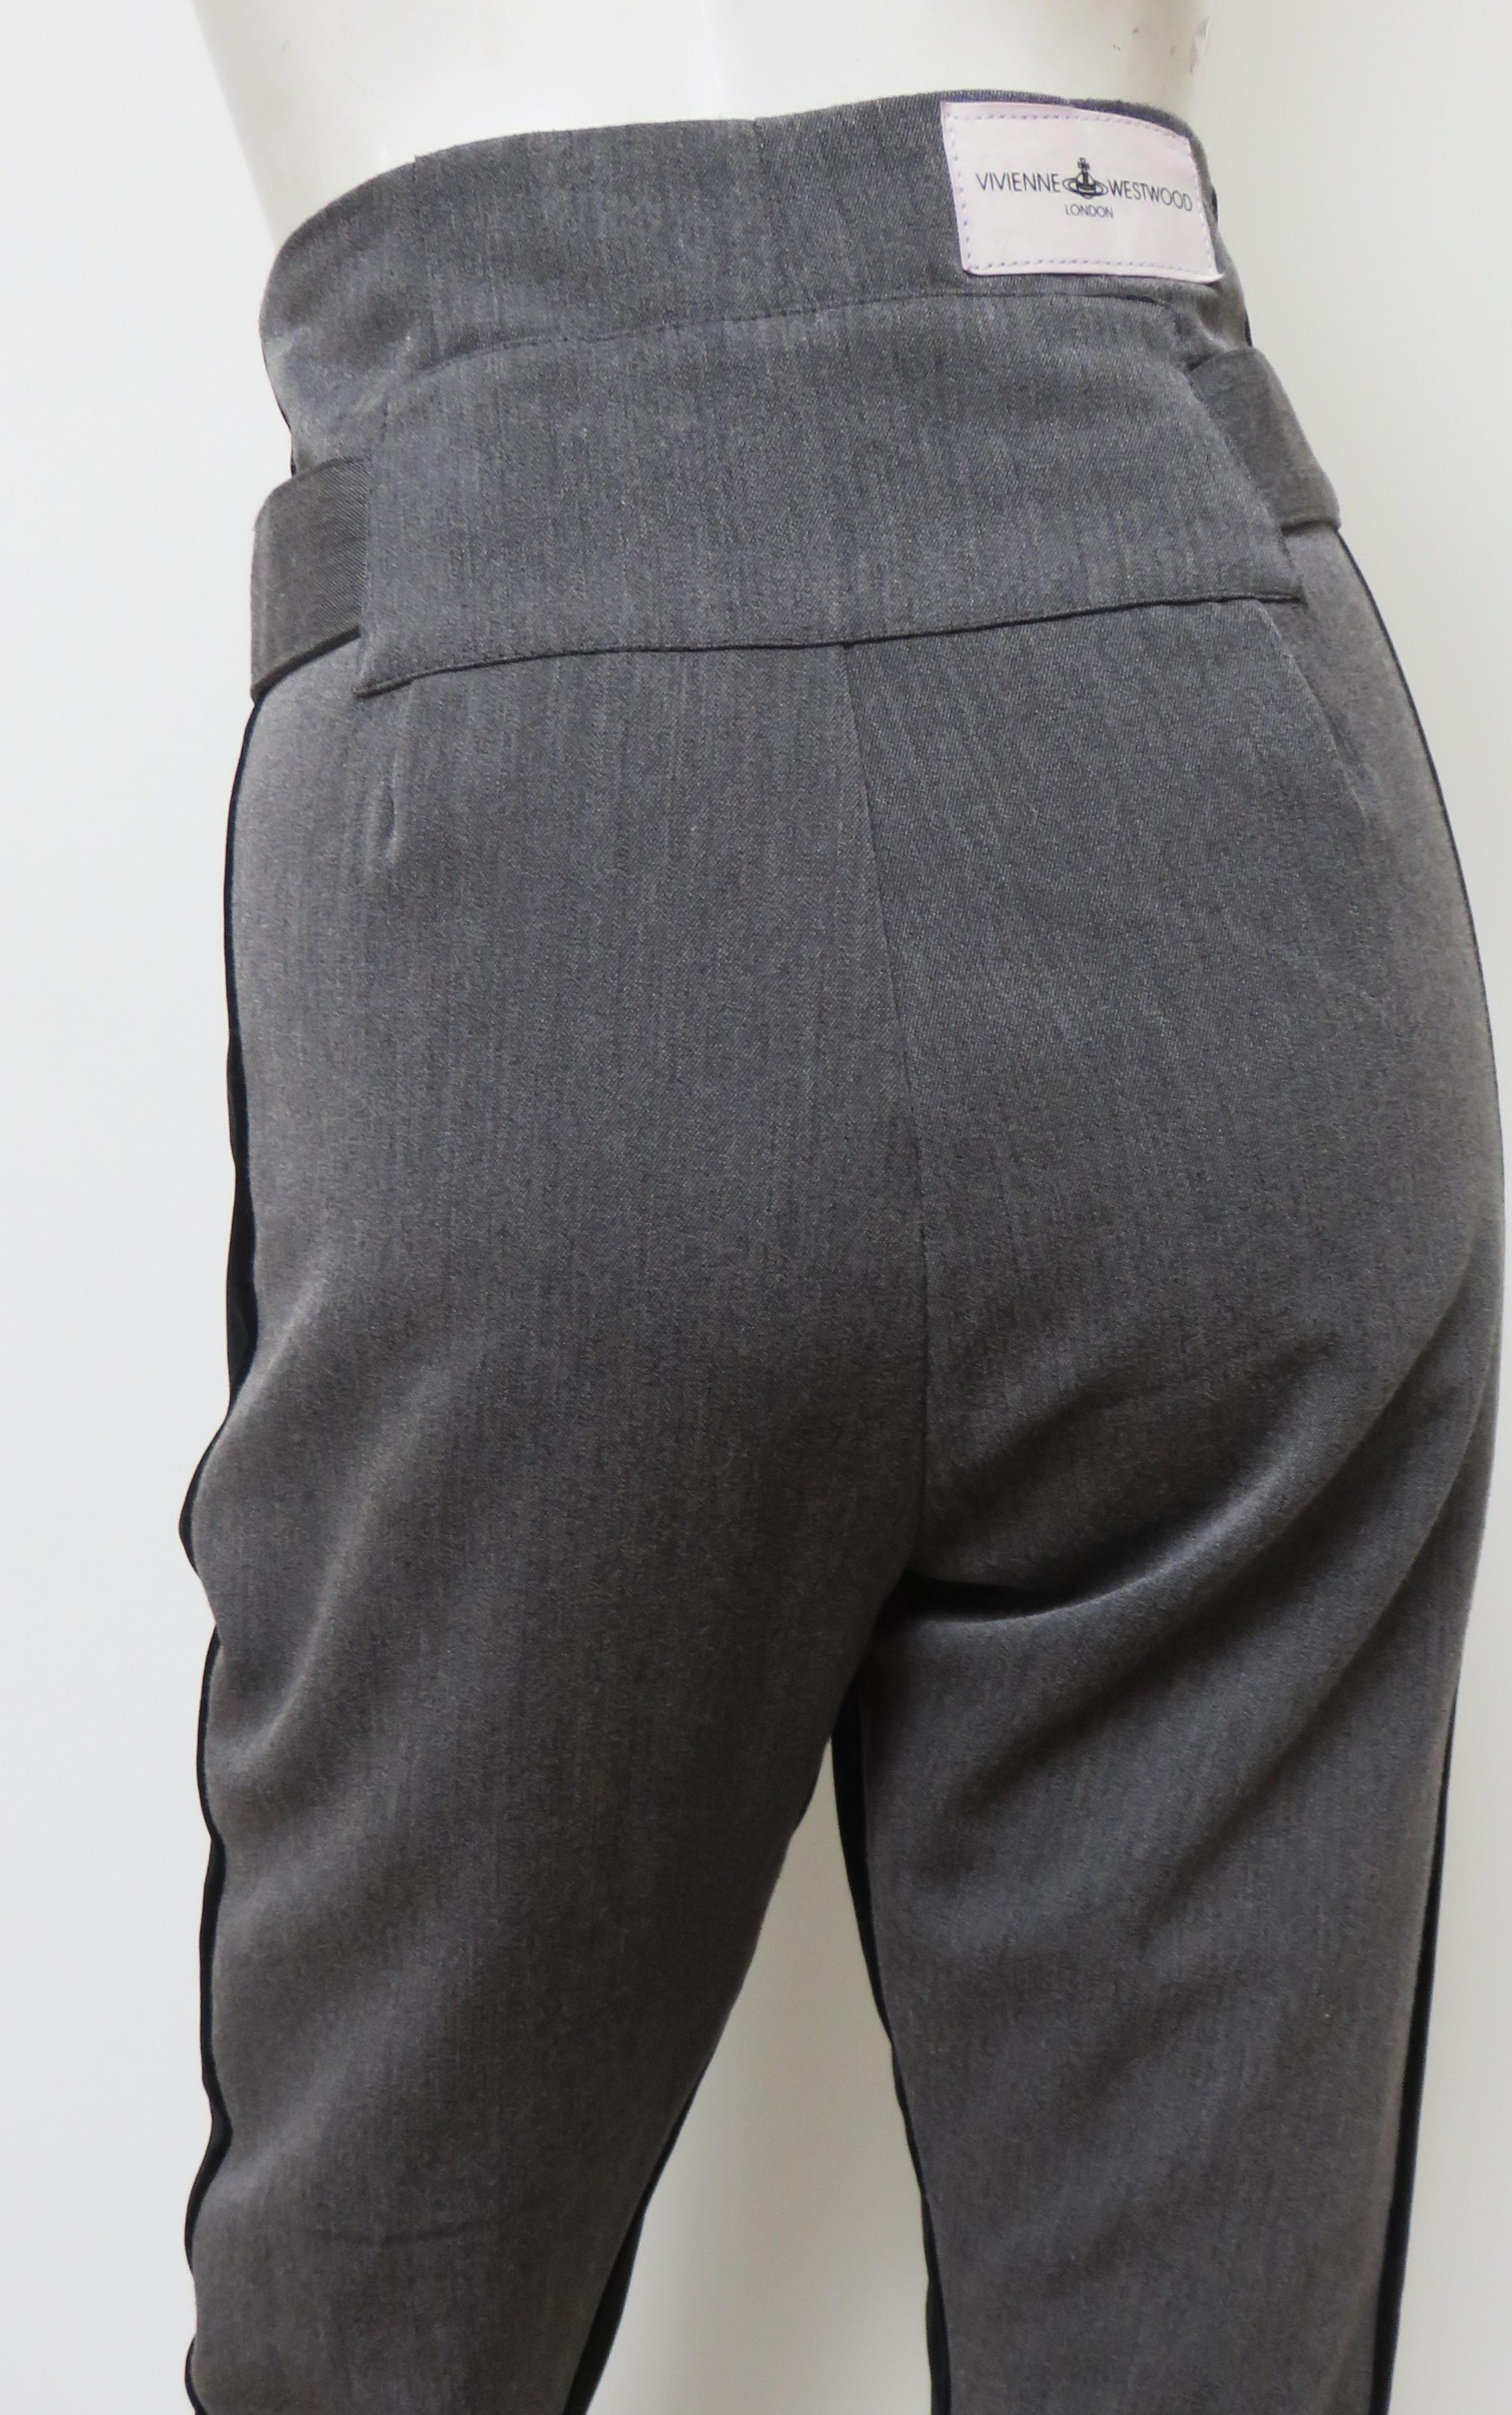 Vivienne Westwood Color Block Pants with Black Trim For Sale 4